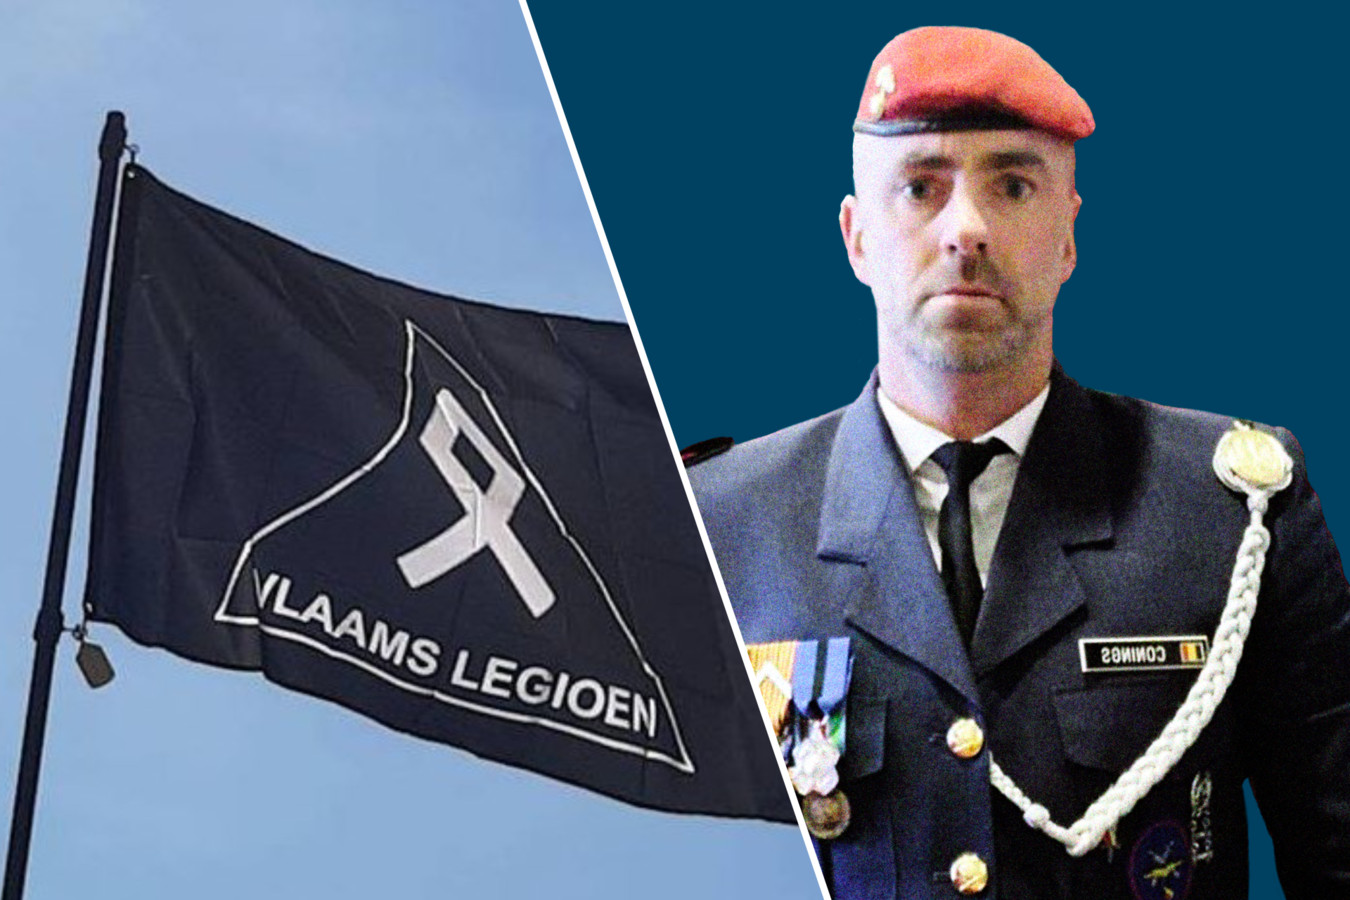 De vlag van het Vlaams Legioen en rechts de spoorloze militair Jürgen Conings.